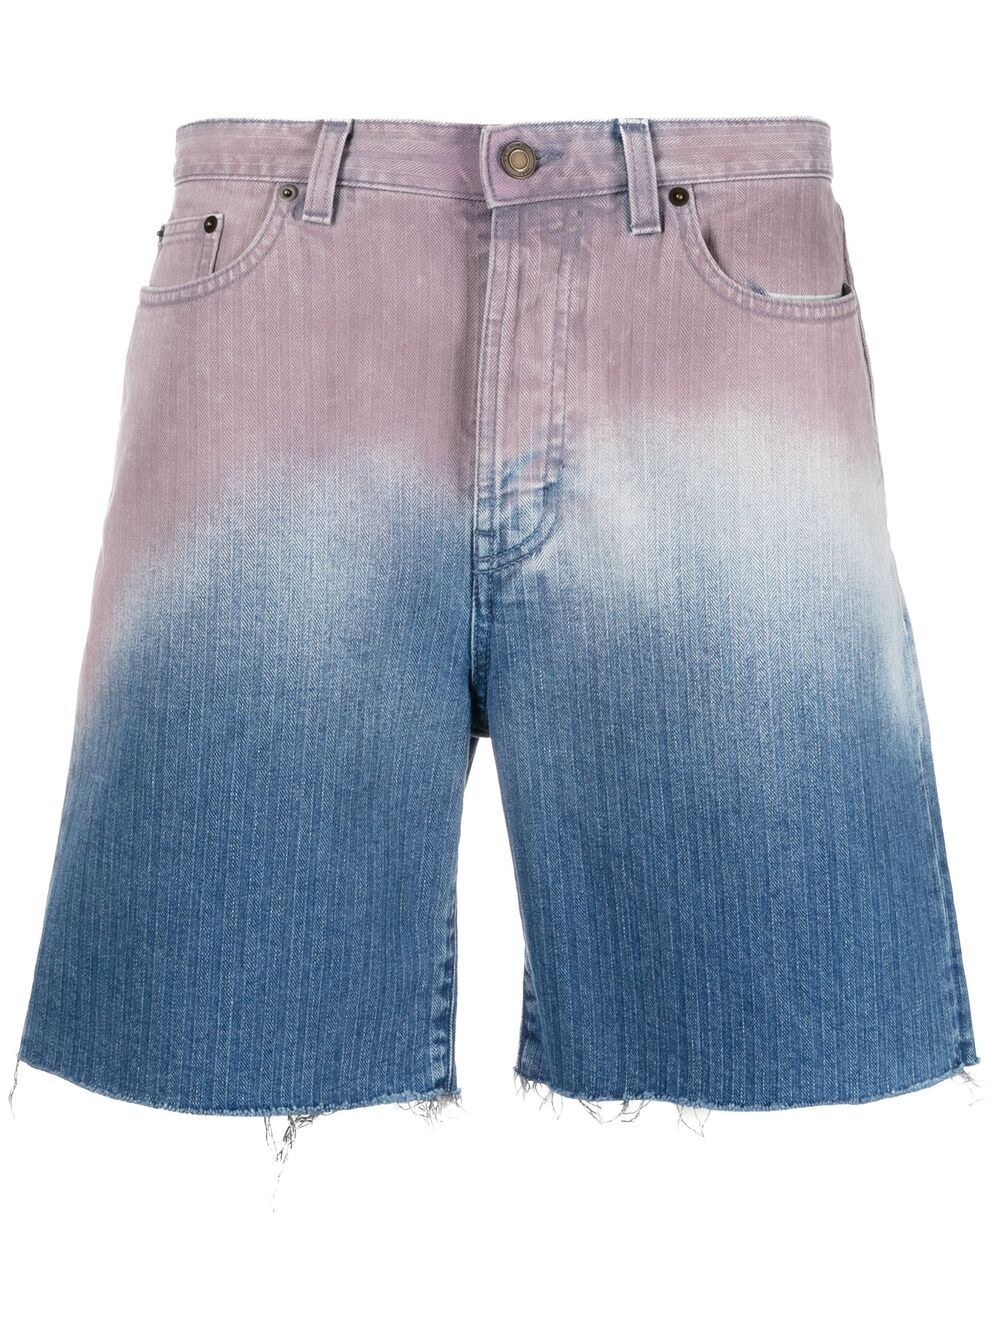 фото Saint laurent джинсовые шорты с эффектом градиента